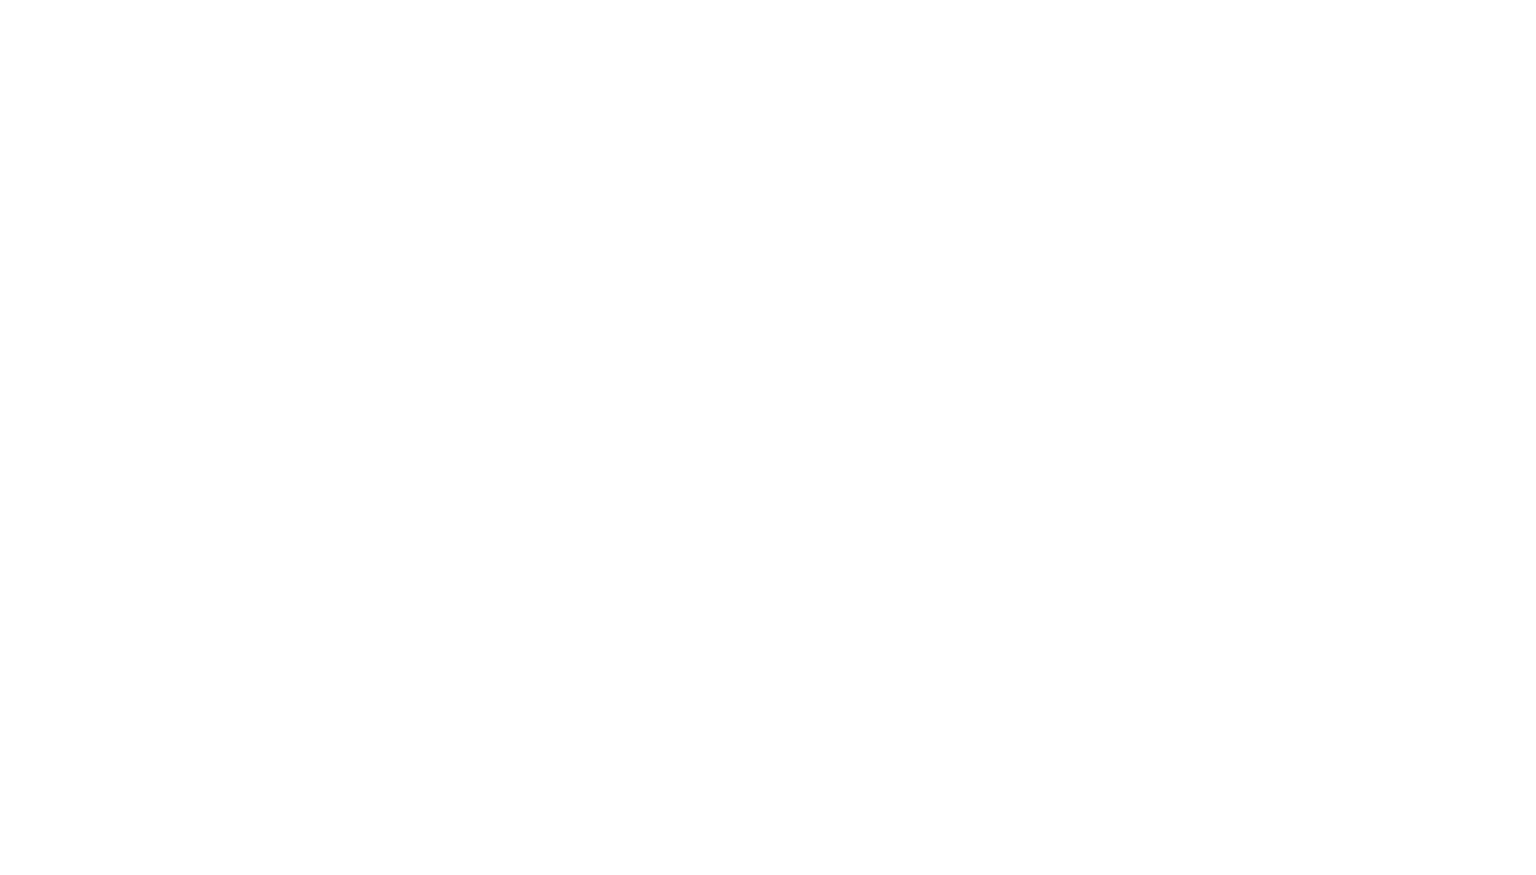 Red Eléctrica logo pour fonds sombres (PNG transparent)